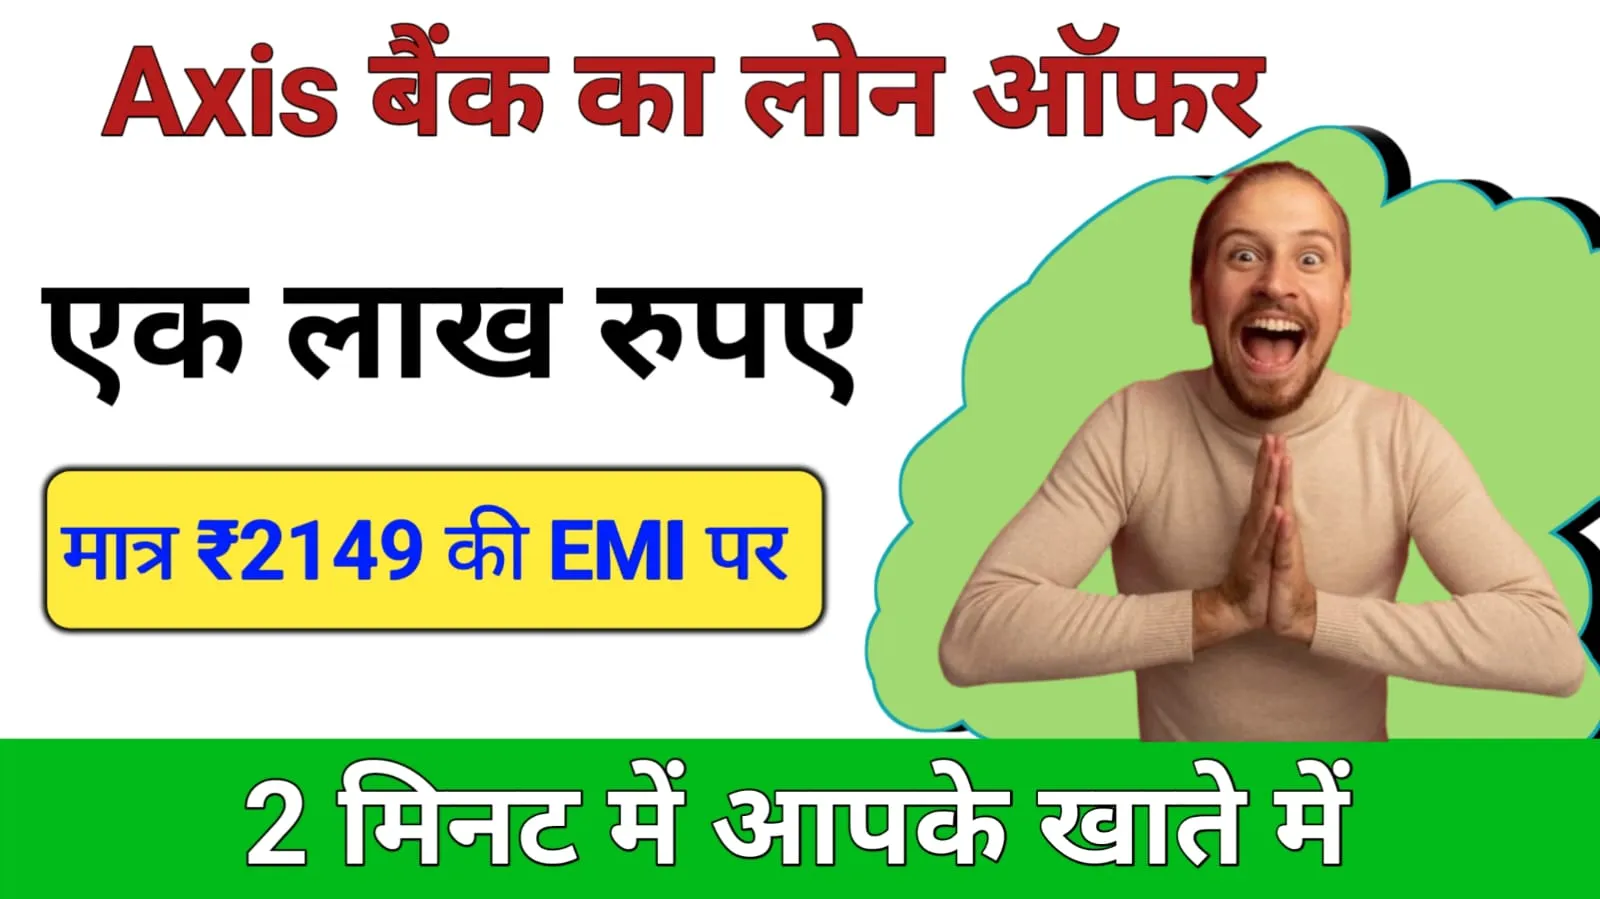 मात्र ₹2149 की EMI पर एक्सिस बैंक दे रहा है एक लाख रुपए का लोन 2 मिनट में आपके खाते में, तुरंत प्राप्त करें